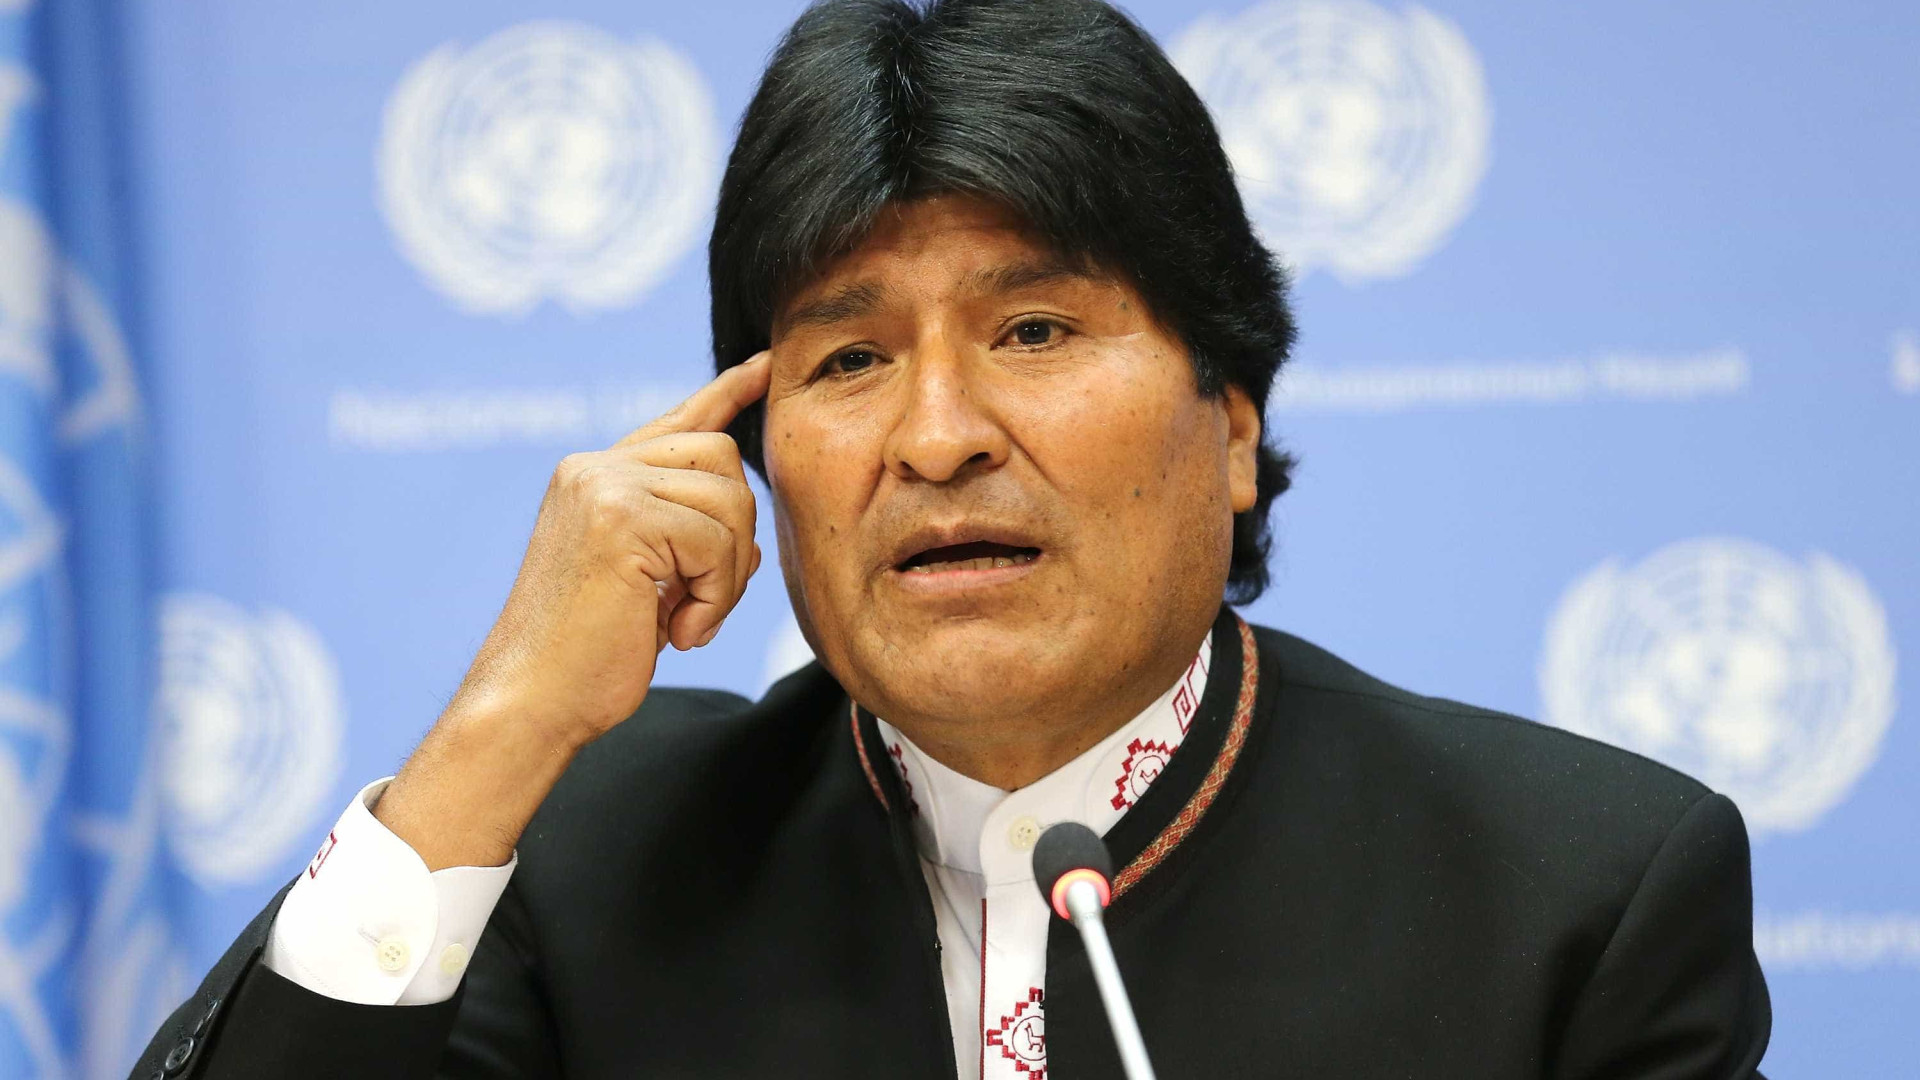 Evo diz estar mais convencido de que rebelião militar na Bolívia foi autogolpe fracassado